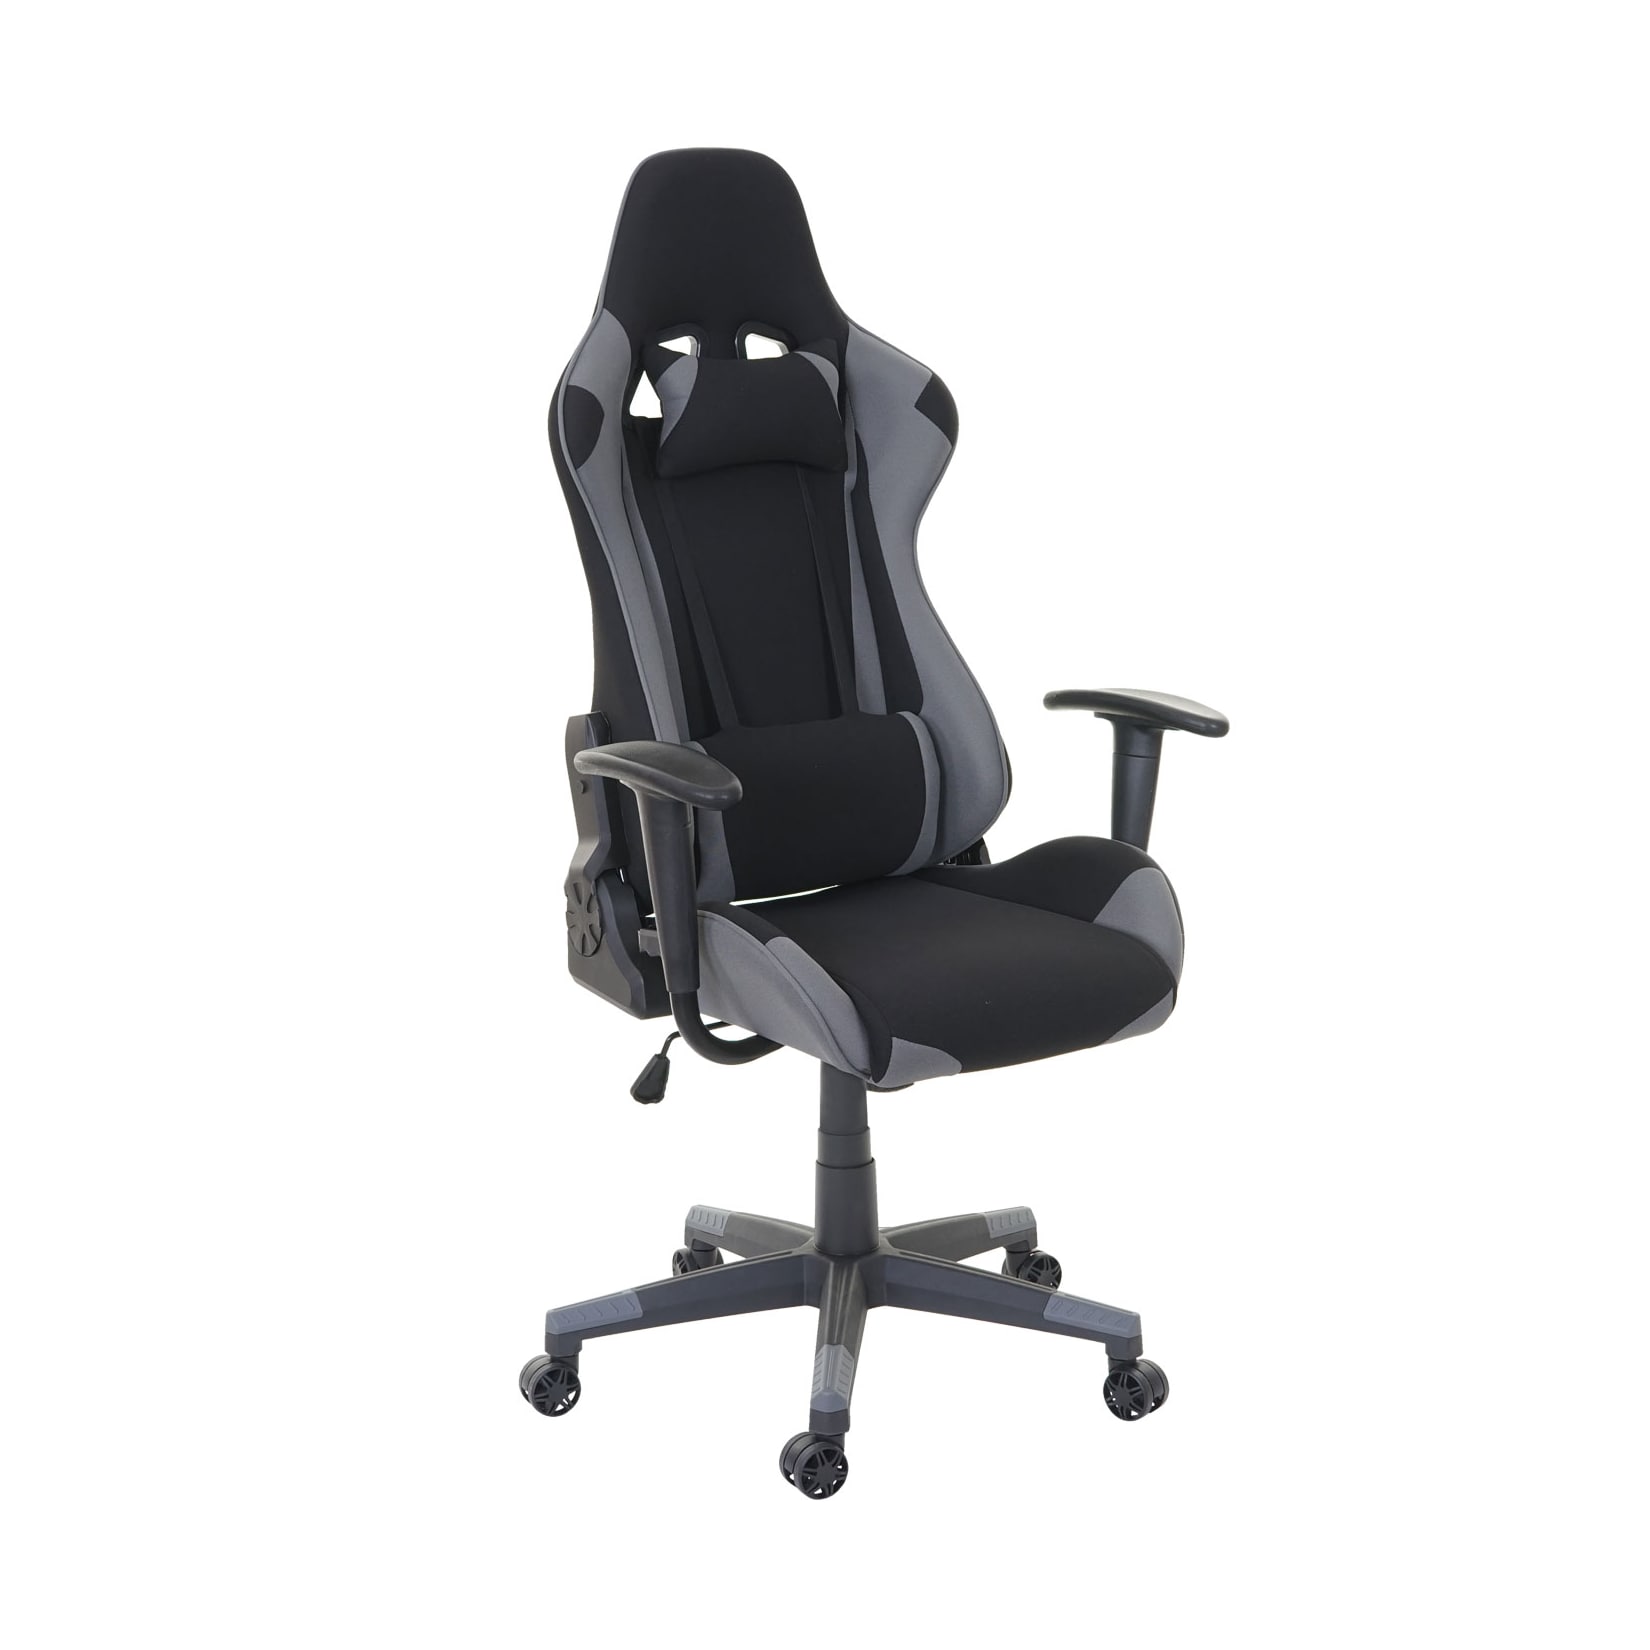 MCW Bürostuhl -D25, Schreibtischstuhl Gamingstuhl Chefsessel Bürosessel, 150kg belastbar Textil/Stoff ~ schwarz/grau